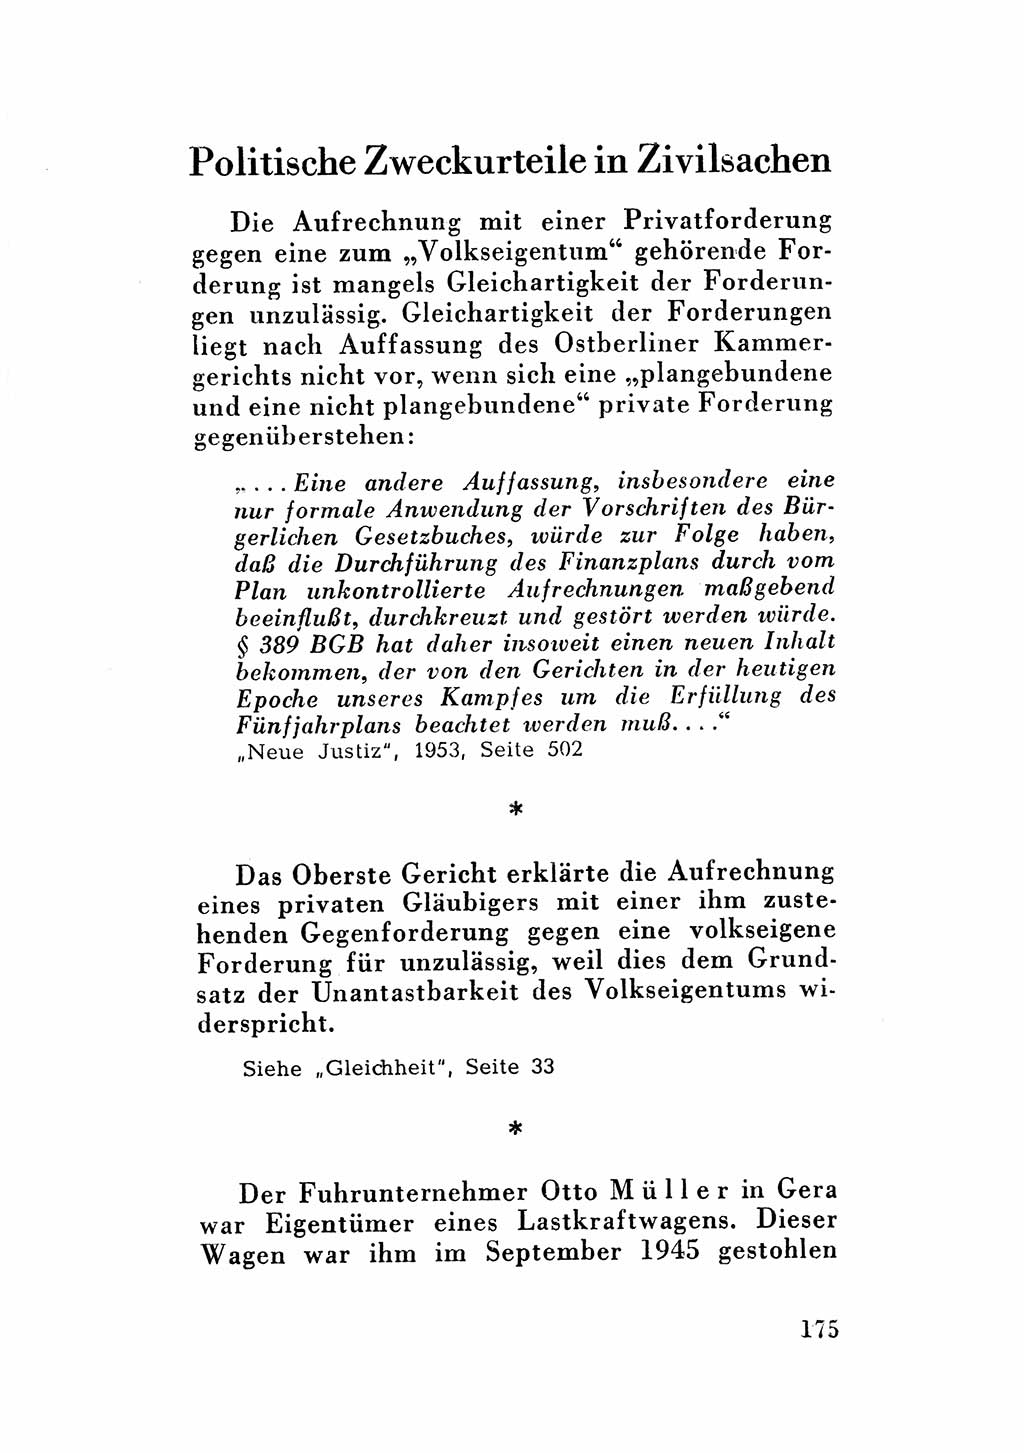 Katalog des Unrechts, Untersuchungsausschuß Freiheitlicher Juristen (UfJ) [Bundesrepublik Deutschland (BRD)] 1956, Seite 175 (Kat. UnR. UfJ BRD 1956, S. 175)